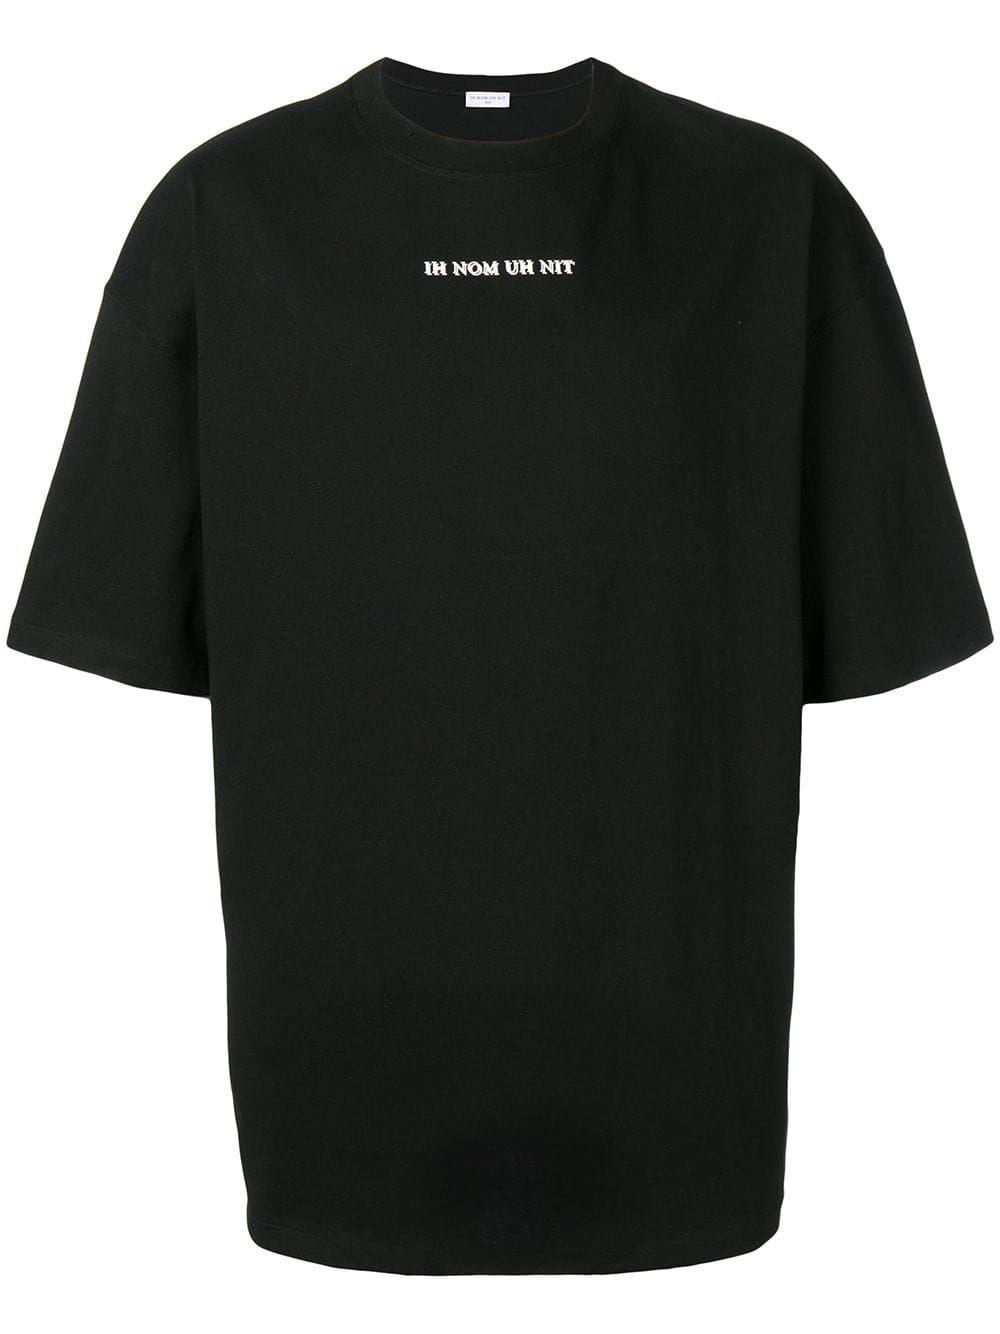 ih nom uh nit Black Cotton T-shirt in Black for Men - Lyst